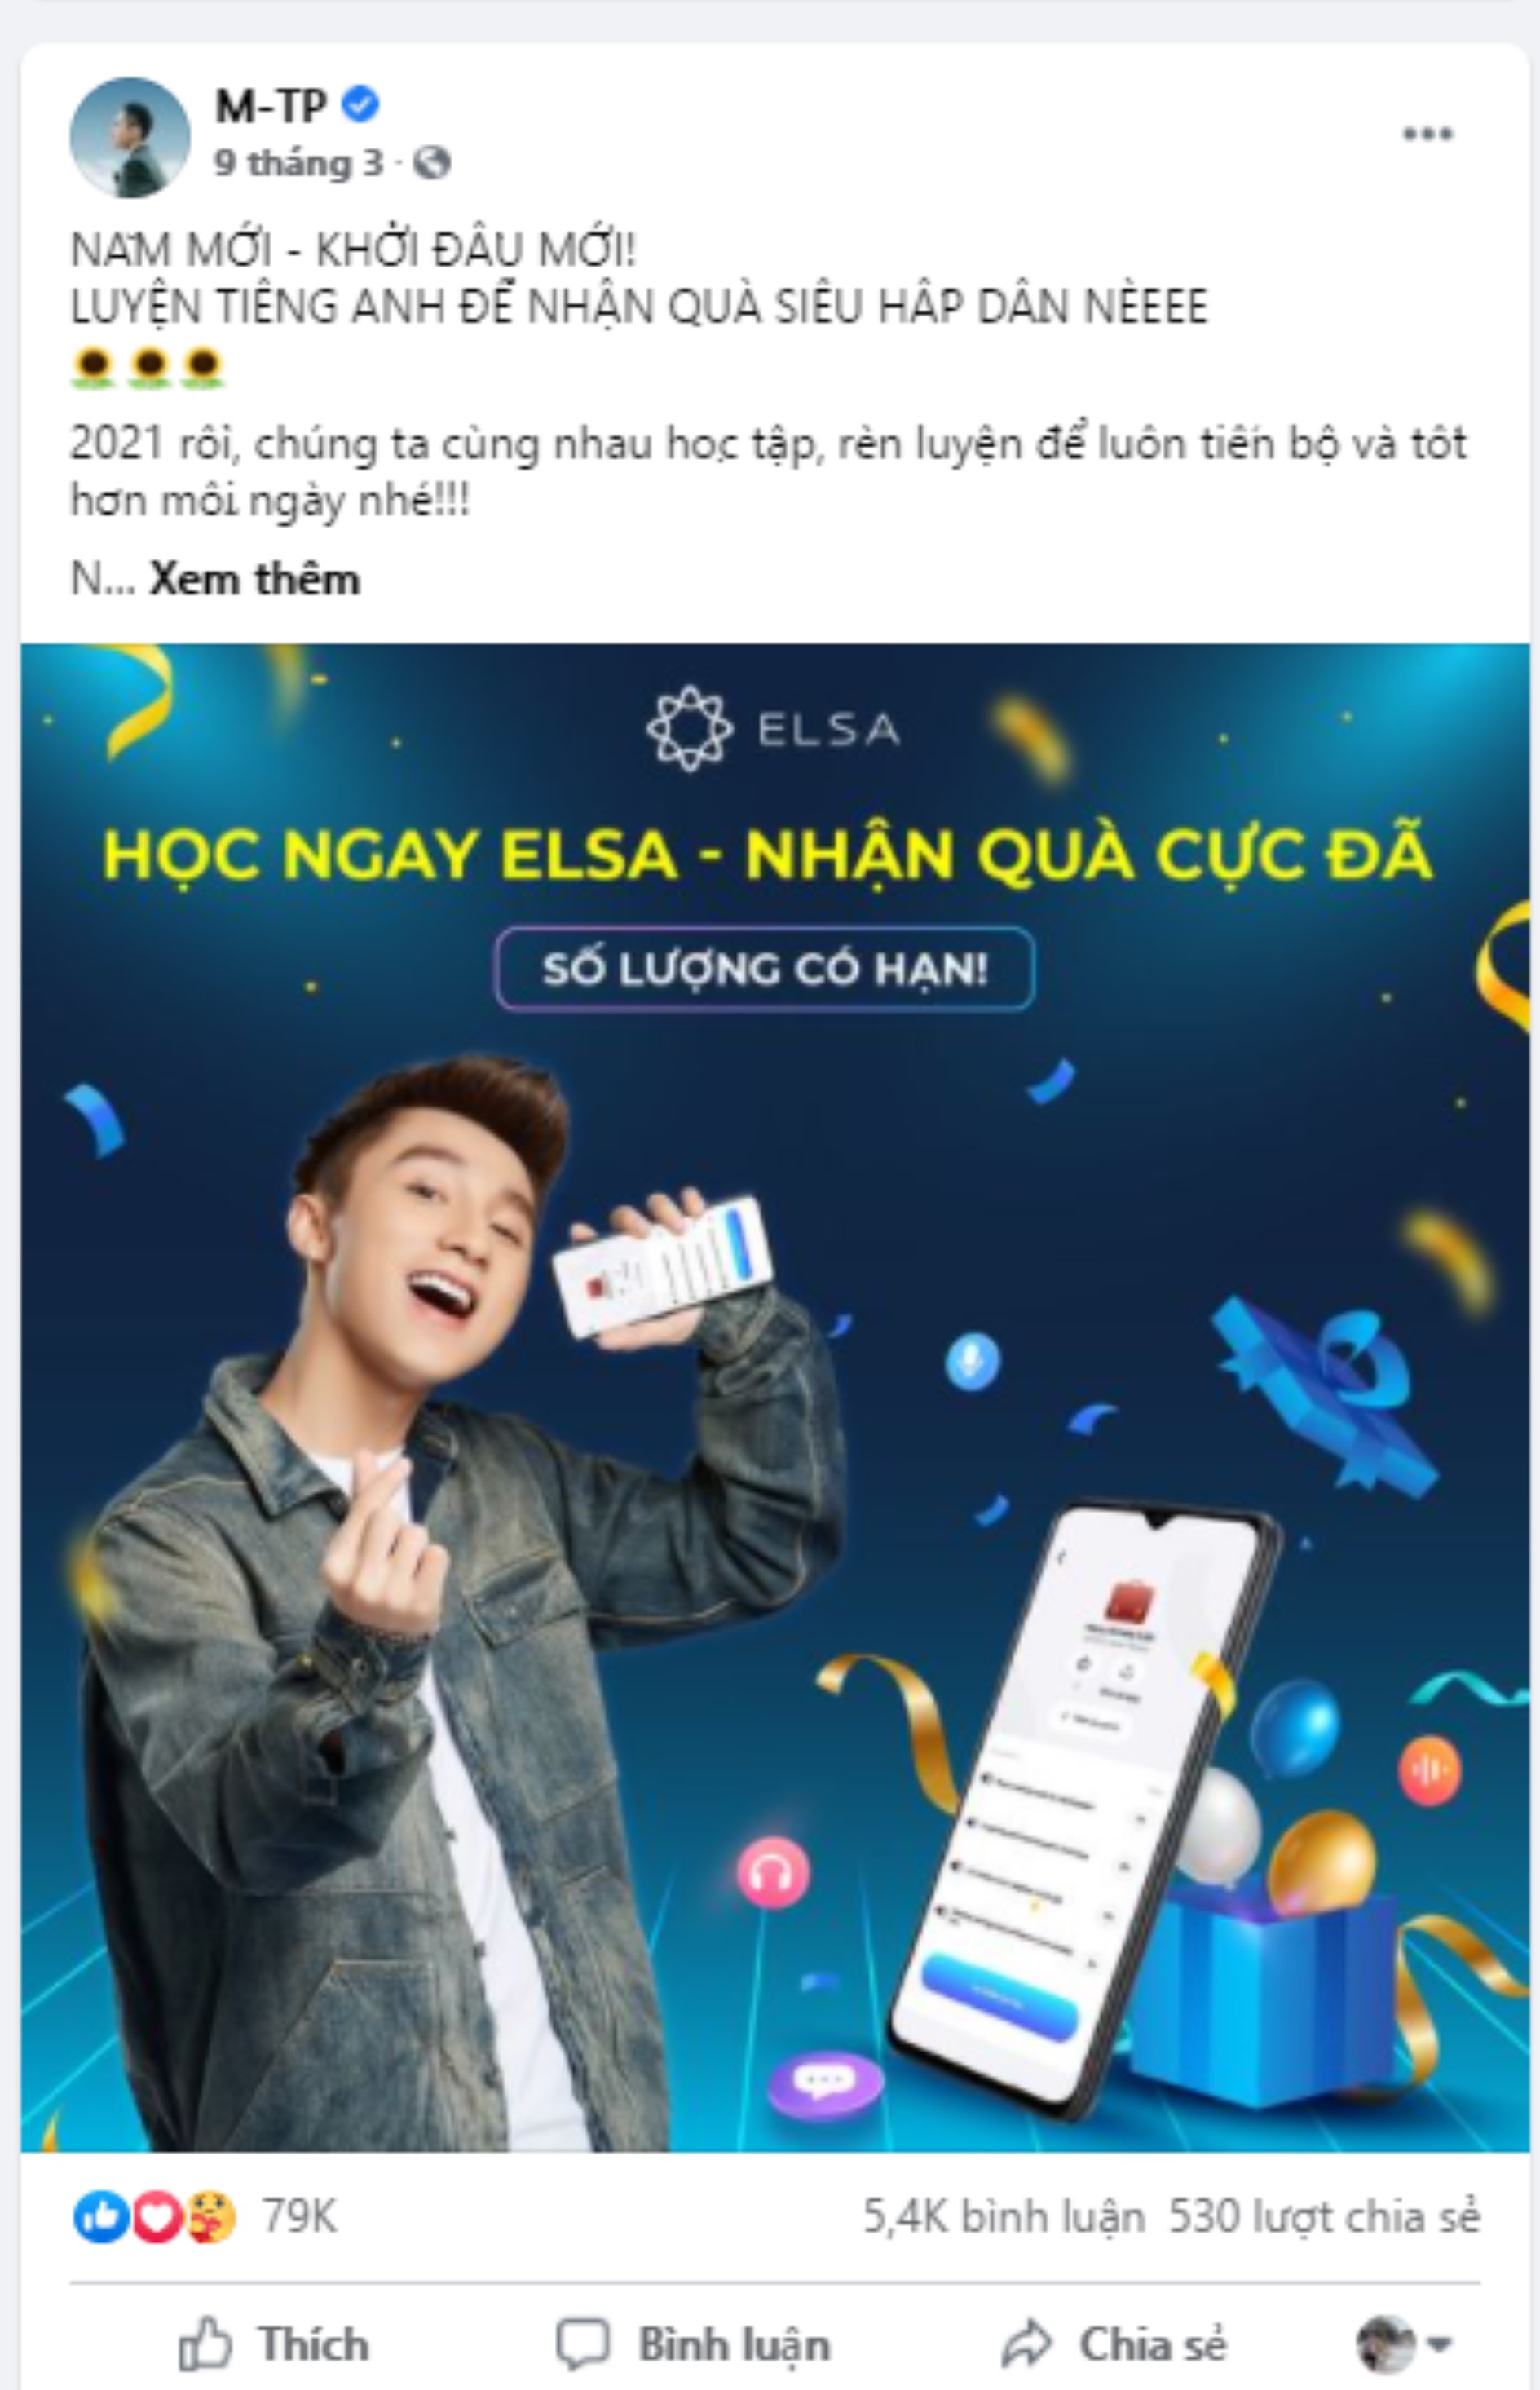 Lần gần nhất Sơn Tùng đăng bài trên trang FB là cách đây cả tháng trước và để quảng cáo cho ...app học Tiếng Anh.